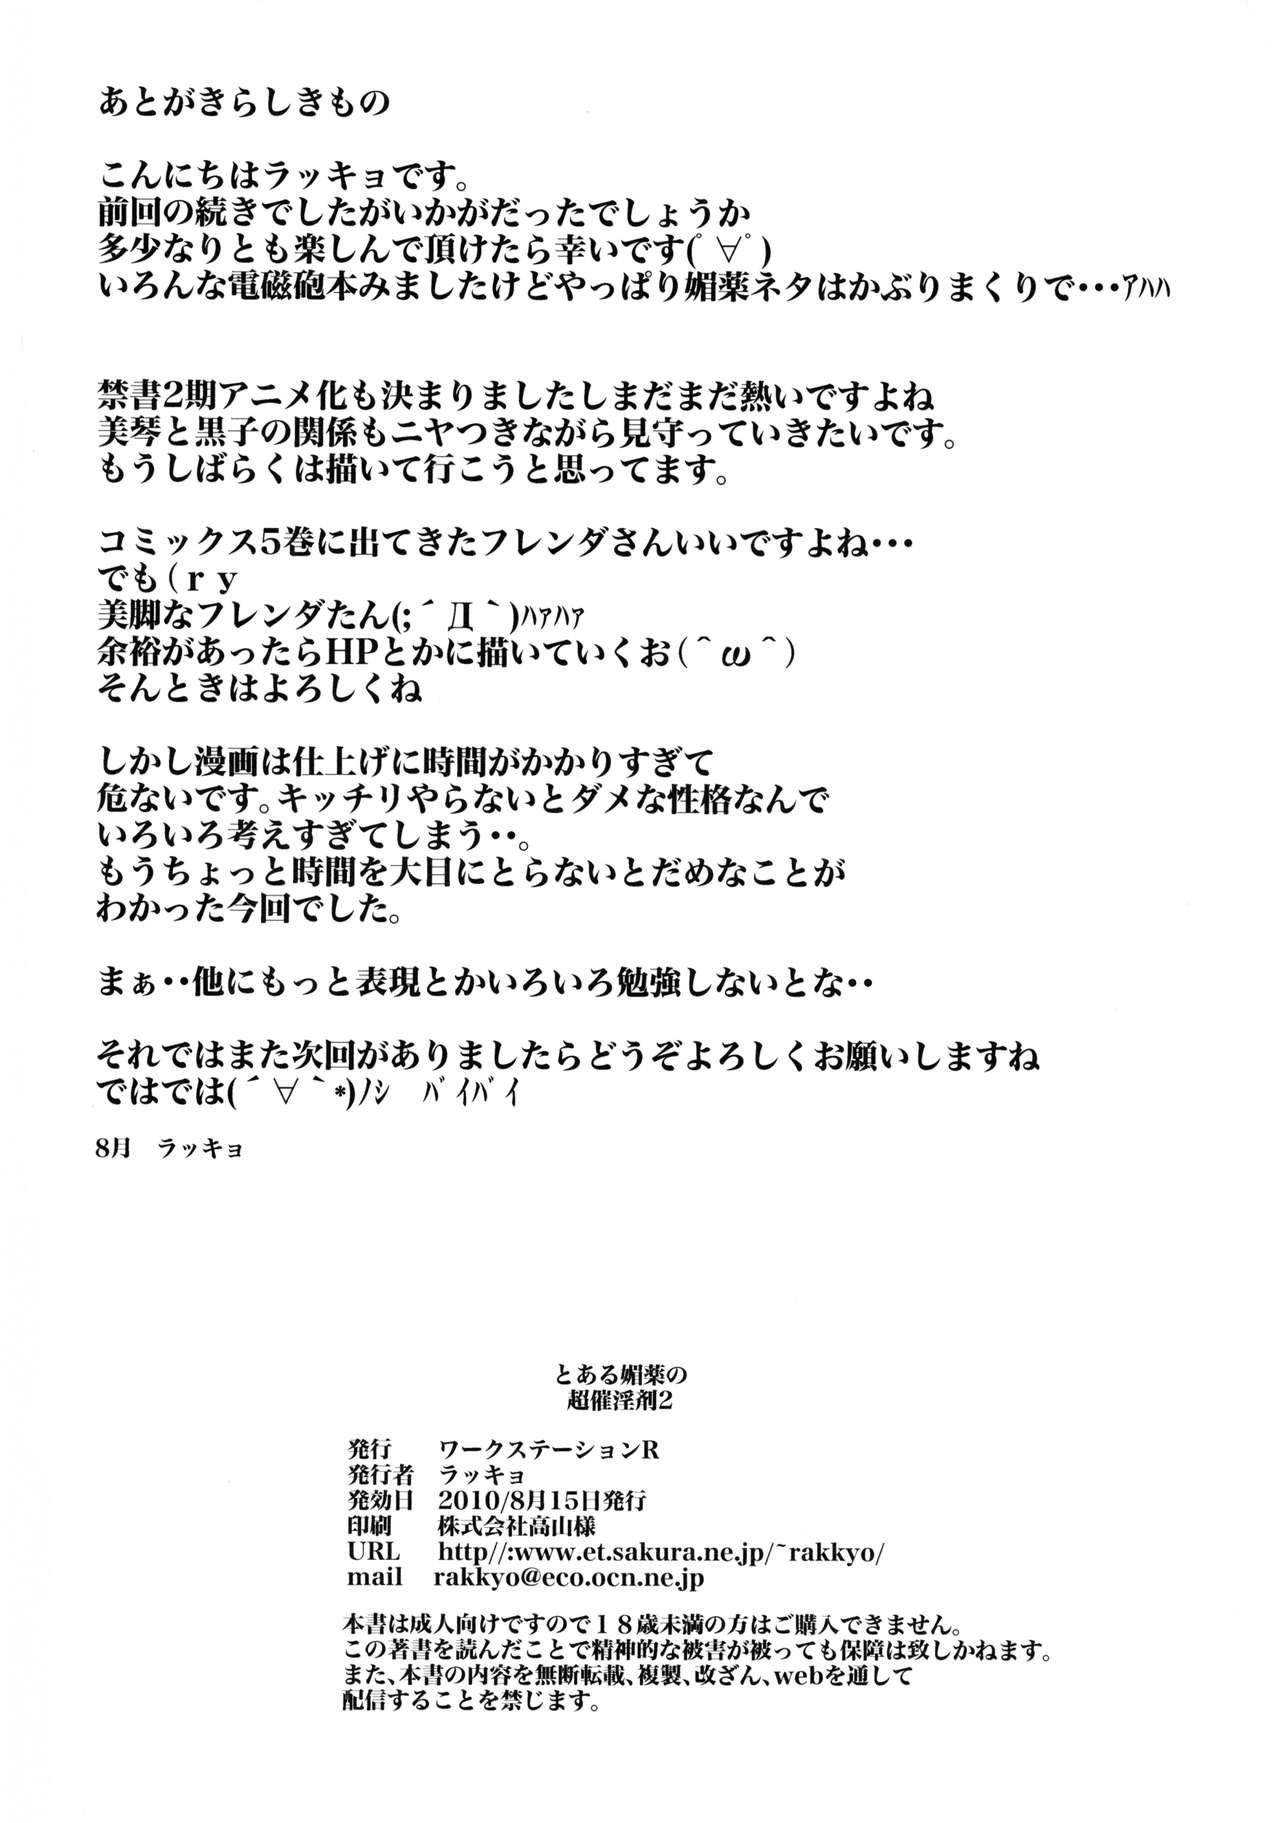 Bwc Toaru Biyaku no Chou Saiinzai 2 - Toaru majutsu no index | a certain magical index Uncensored - Page 26